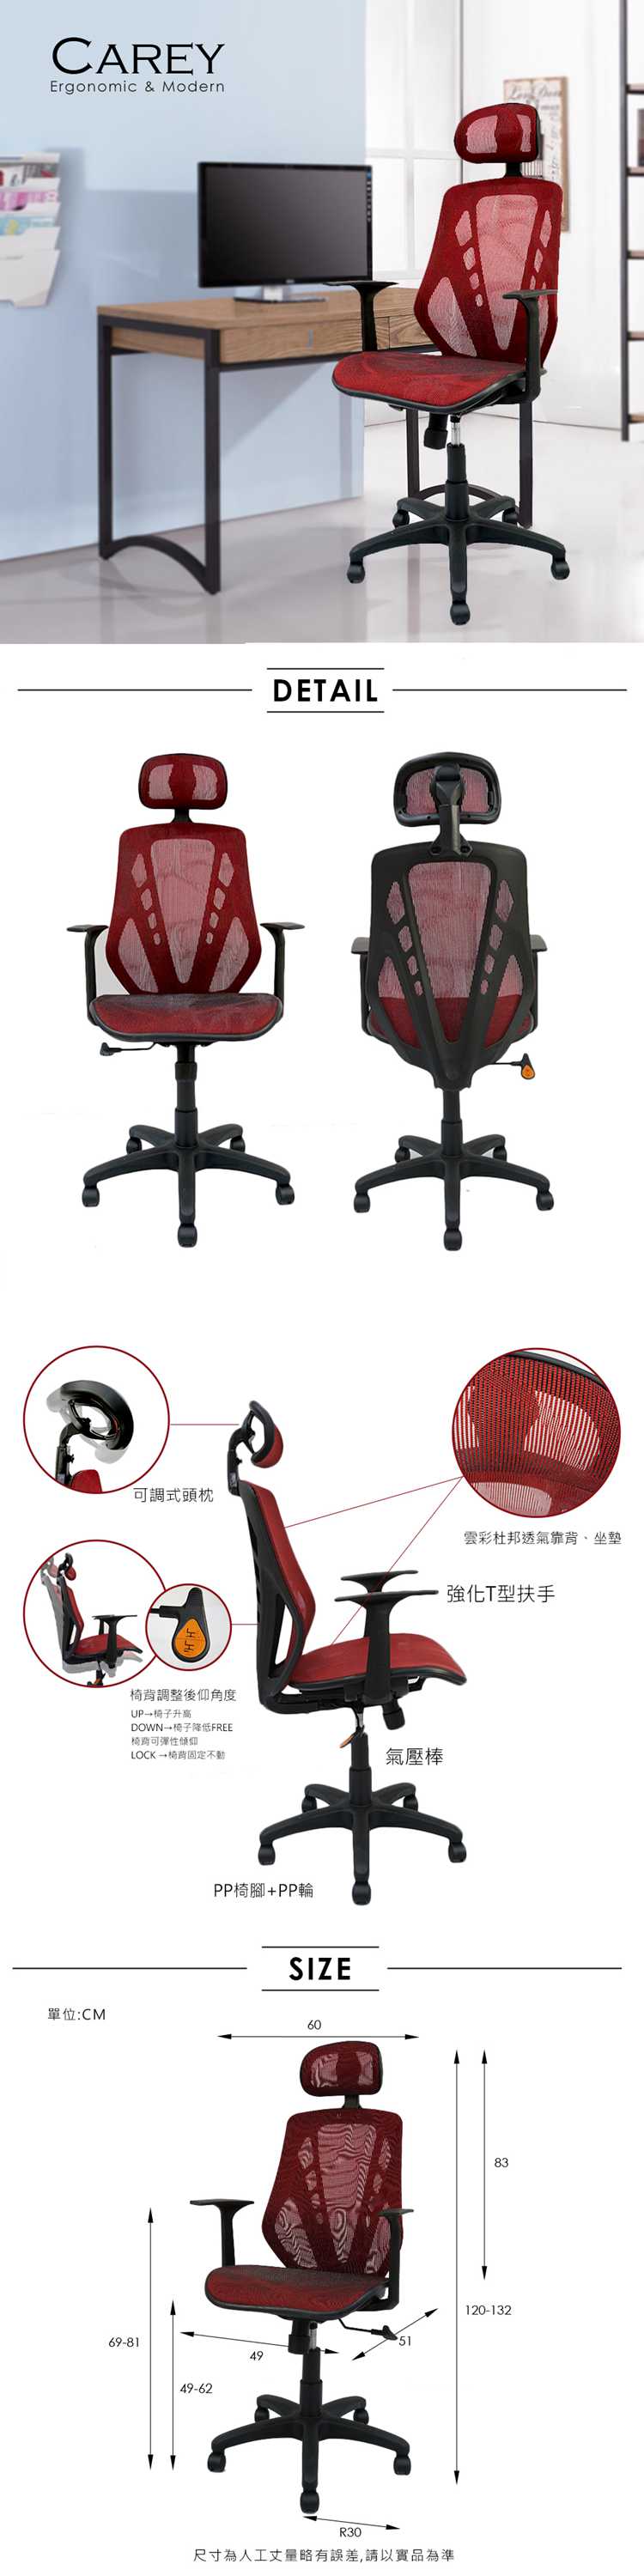 辦公椅/電腦椅 Carey頭靠透氣網布辦公椅/電腦椅【obis】